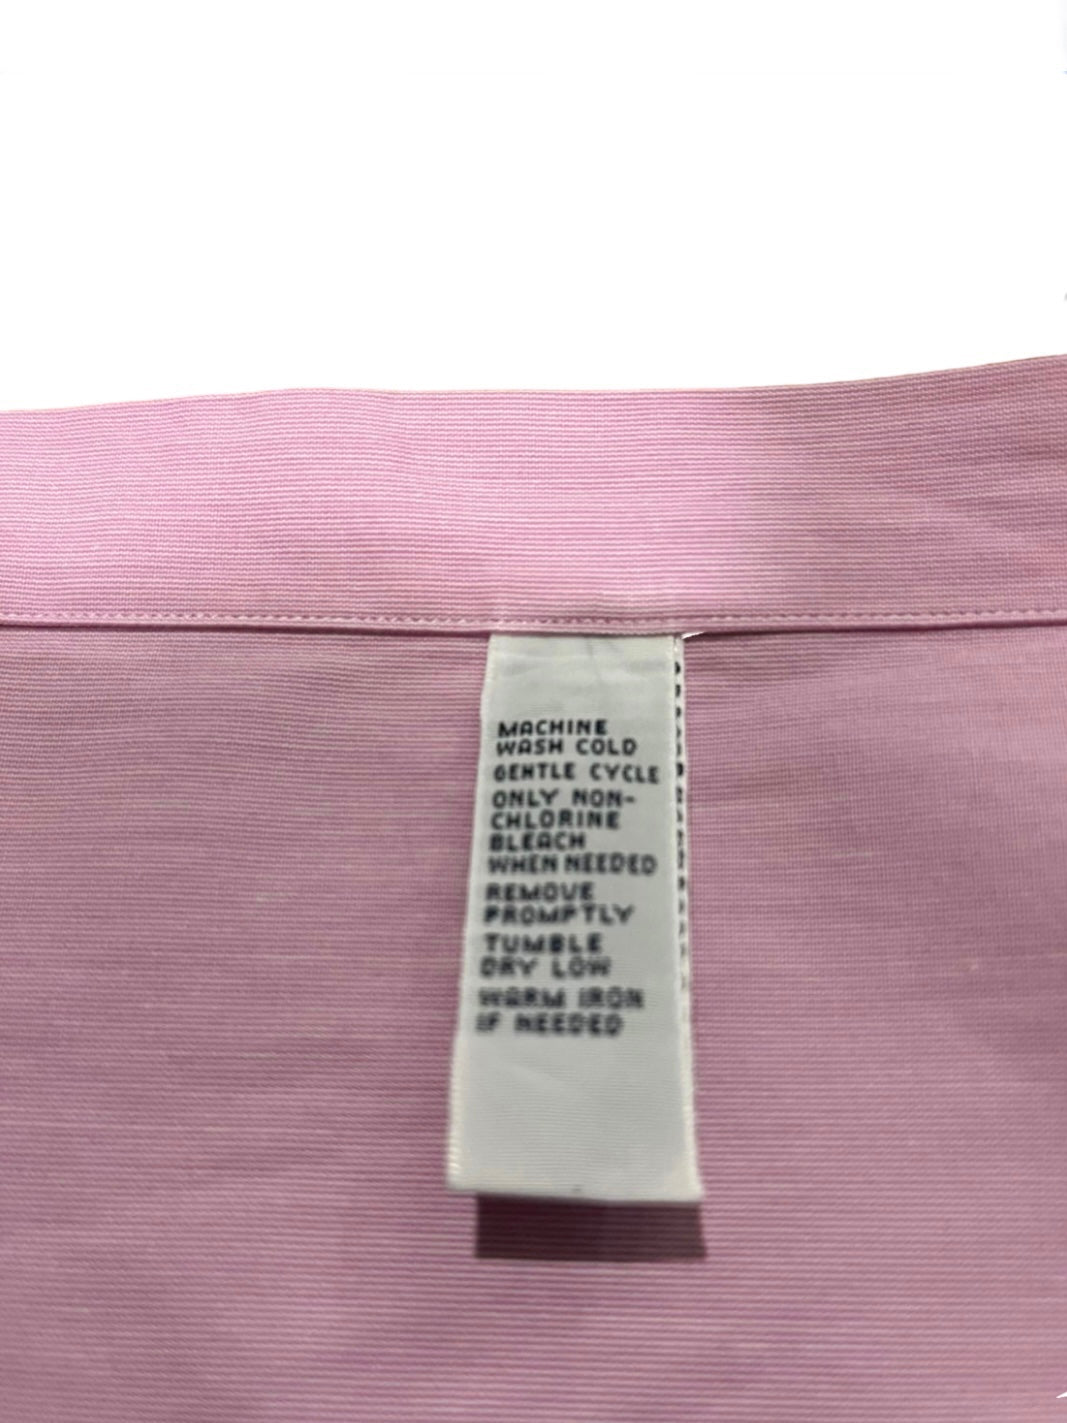 "Polo by Ralph Lauren" pink dress shirt 『REGENT』